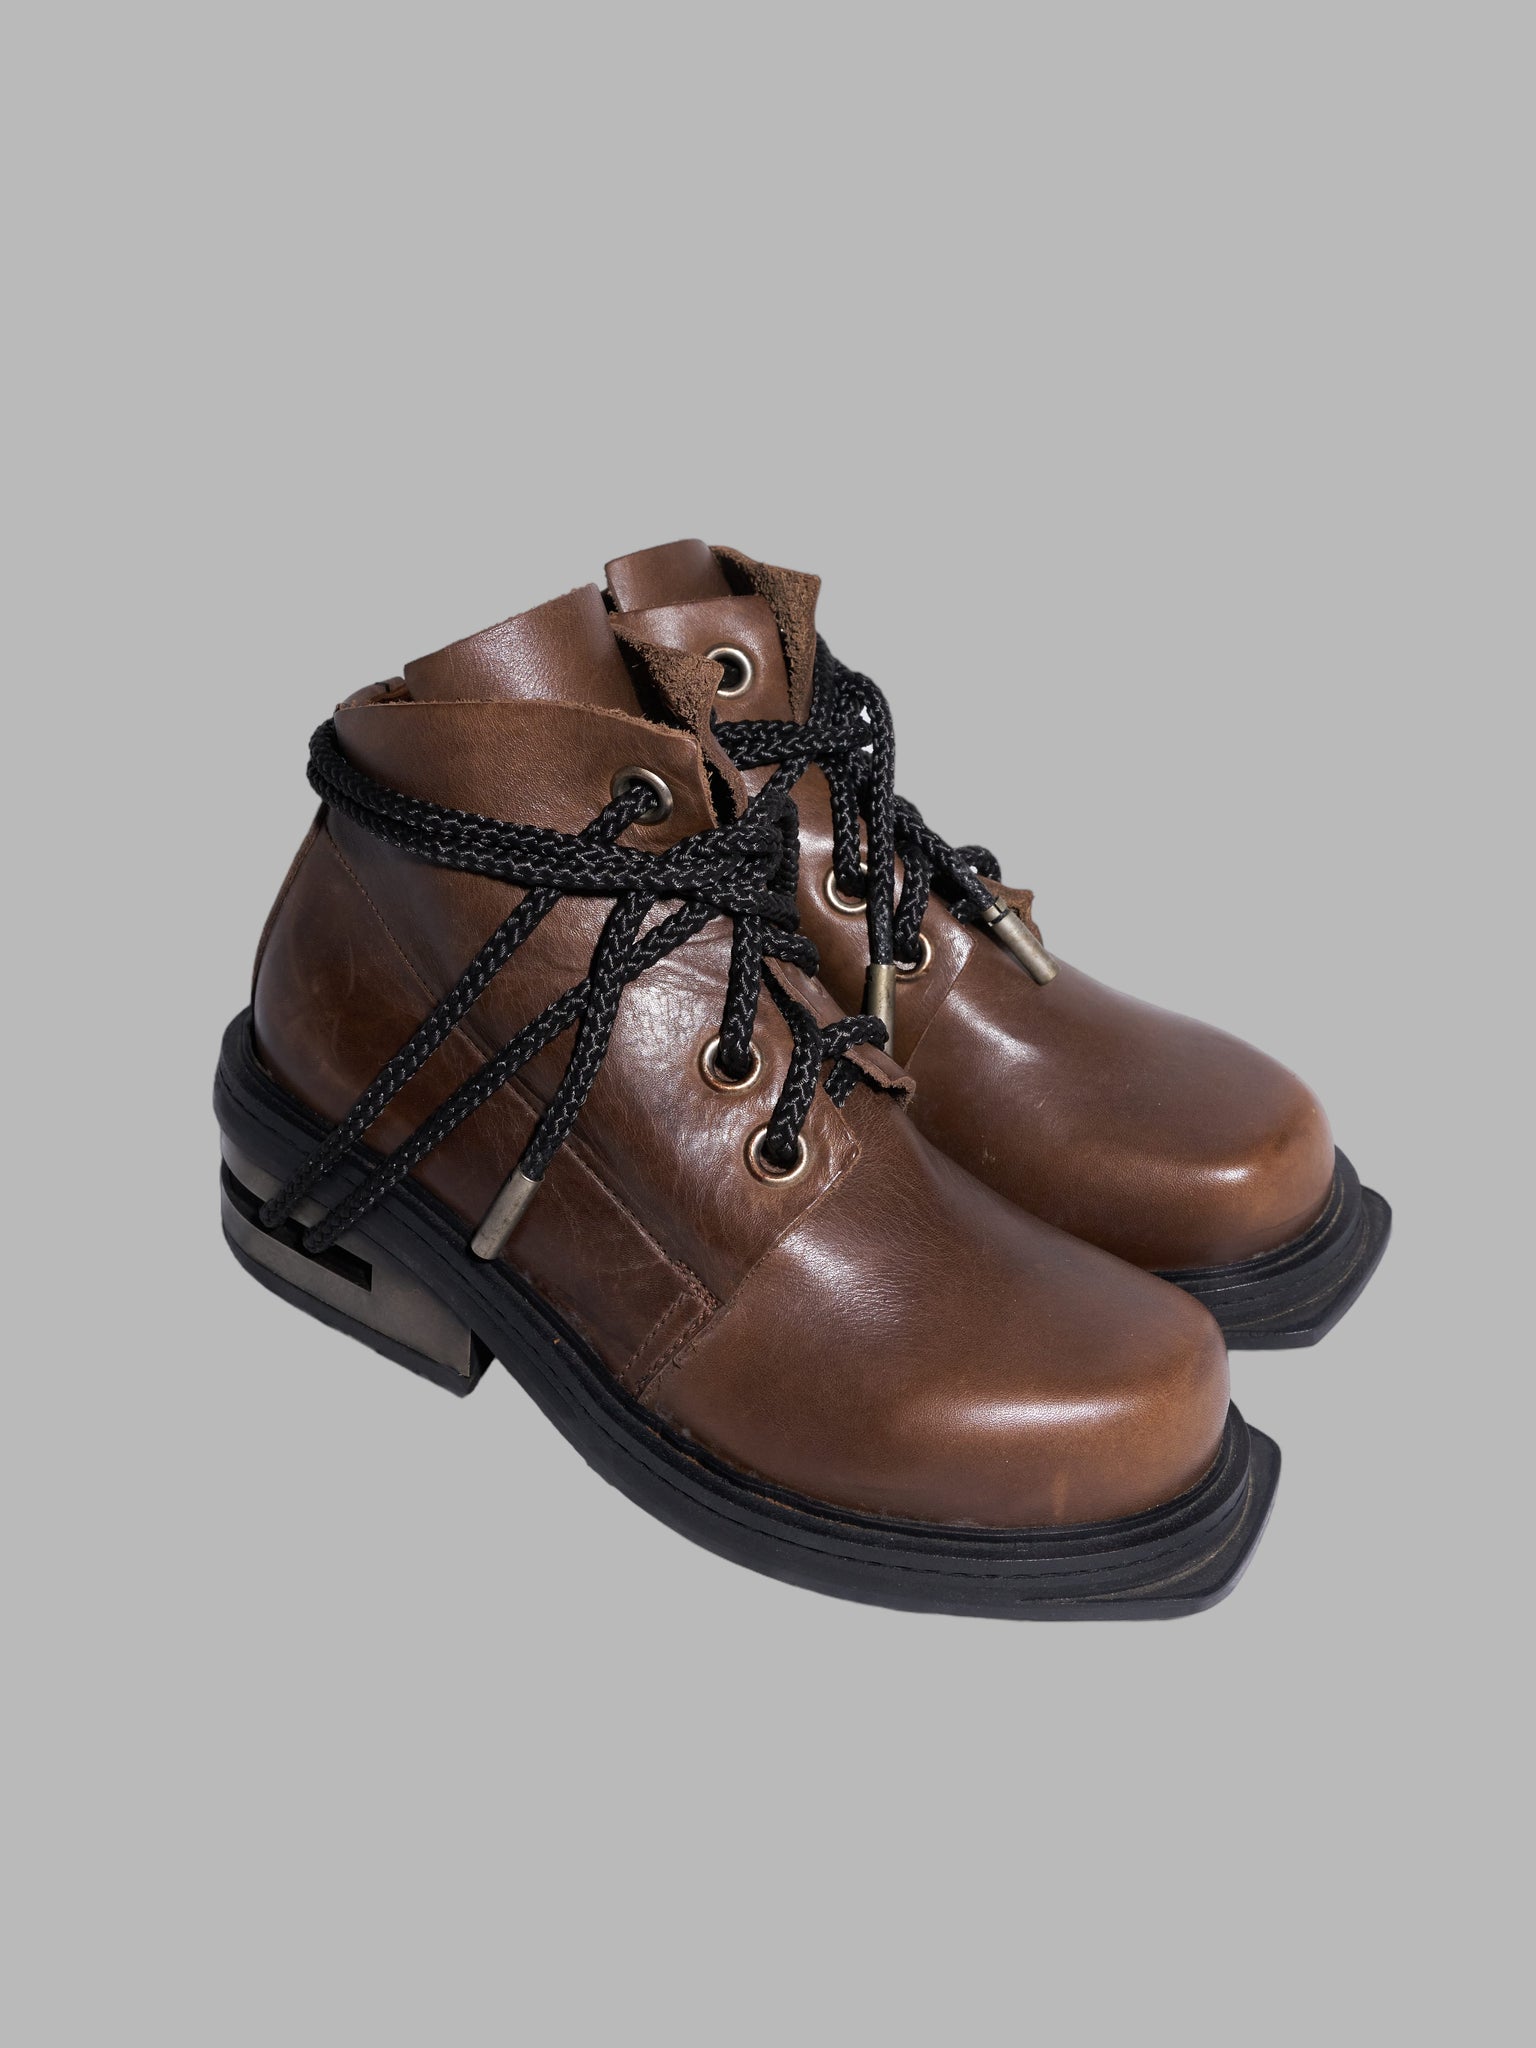 Dirk Bikkembergs 1990s brown leather steel heel mountaineering boots - EU 39